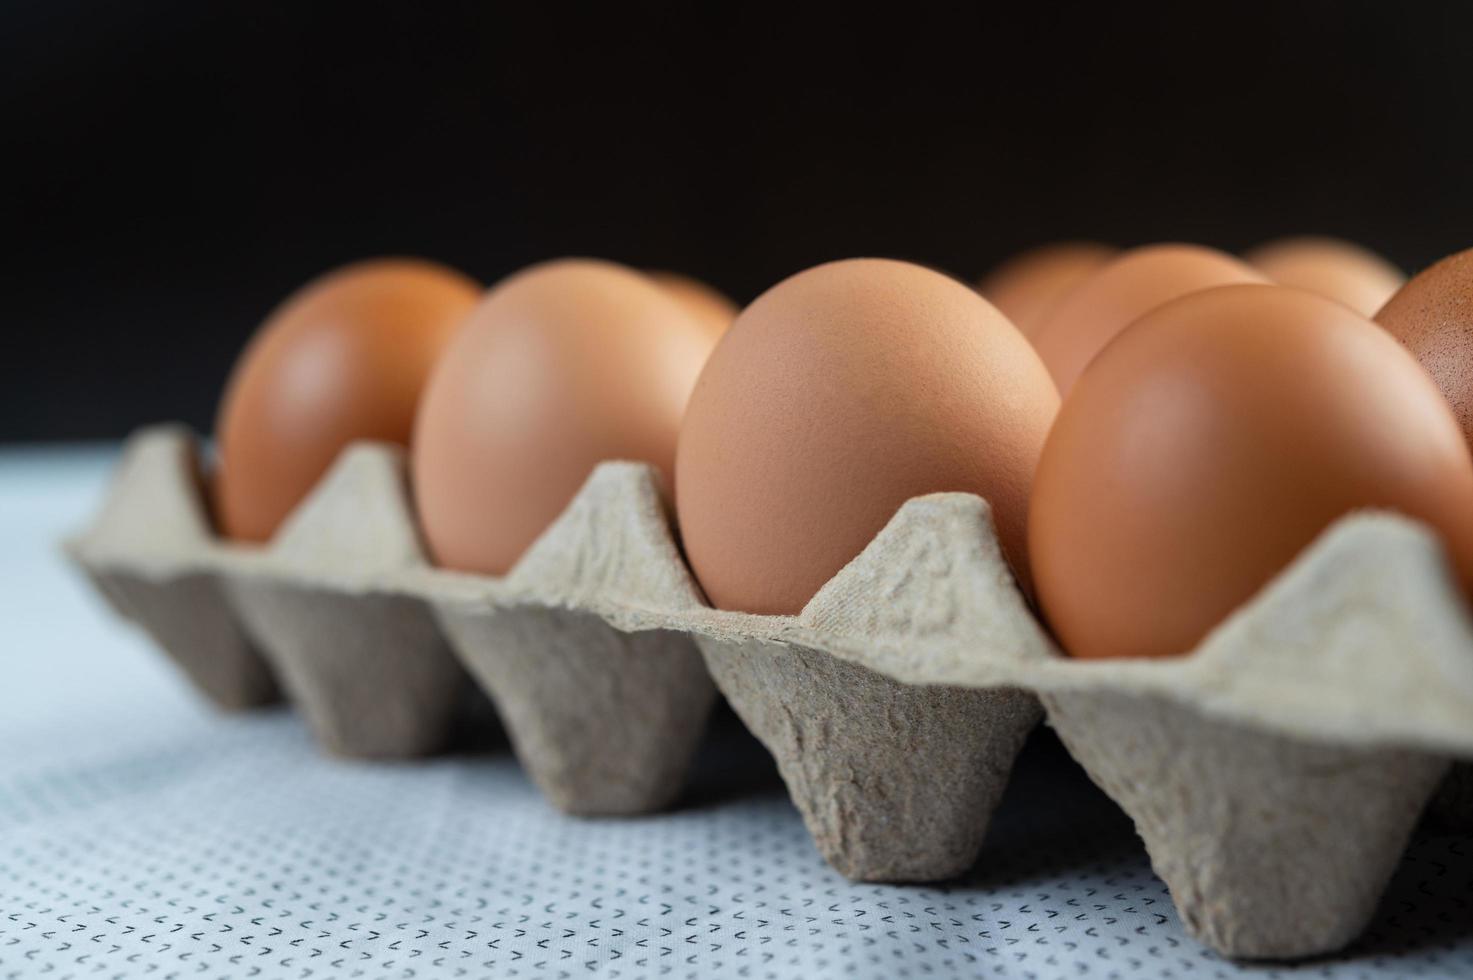 uova di gallina poste su un vassoio per uova foto